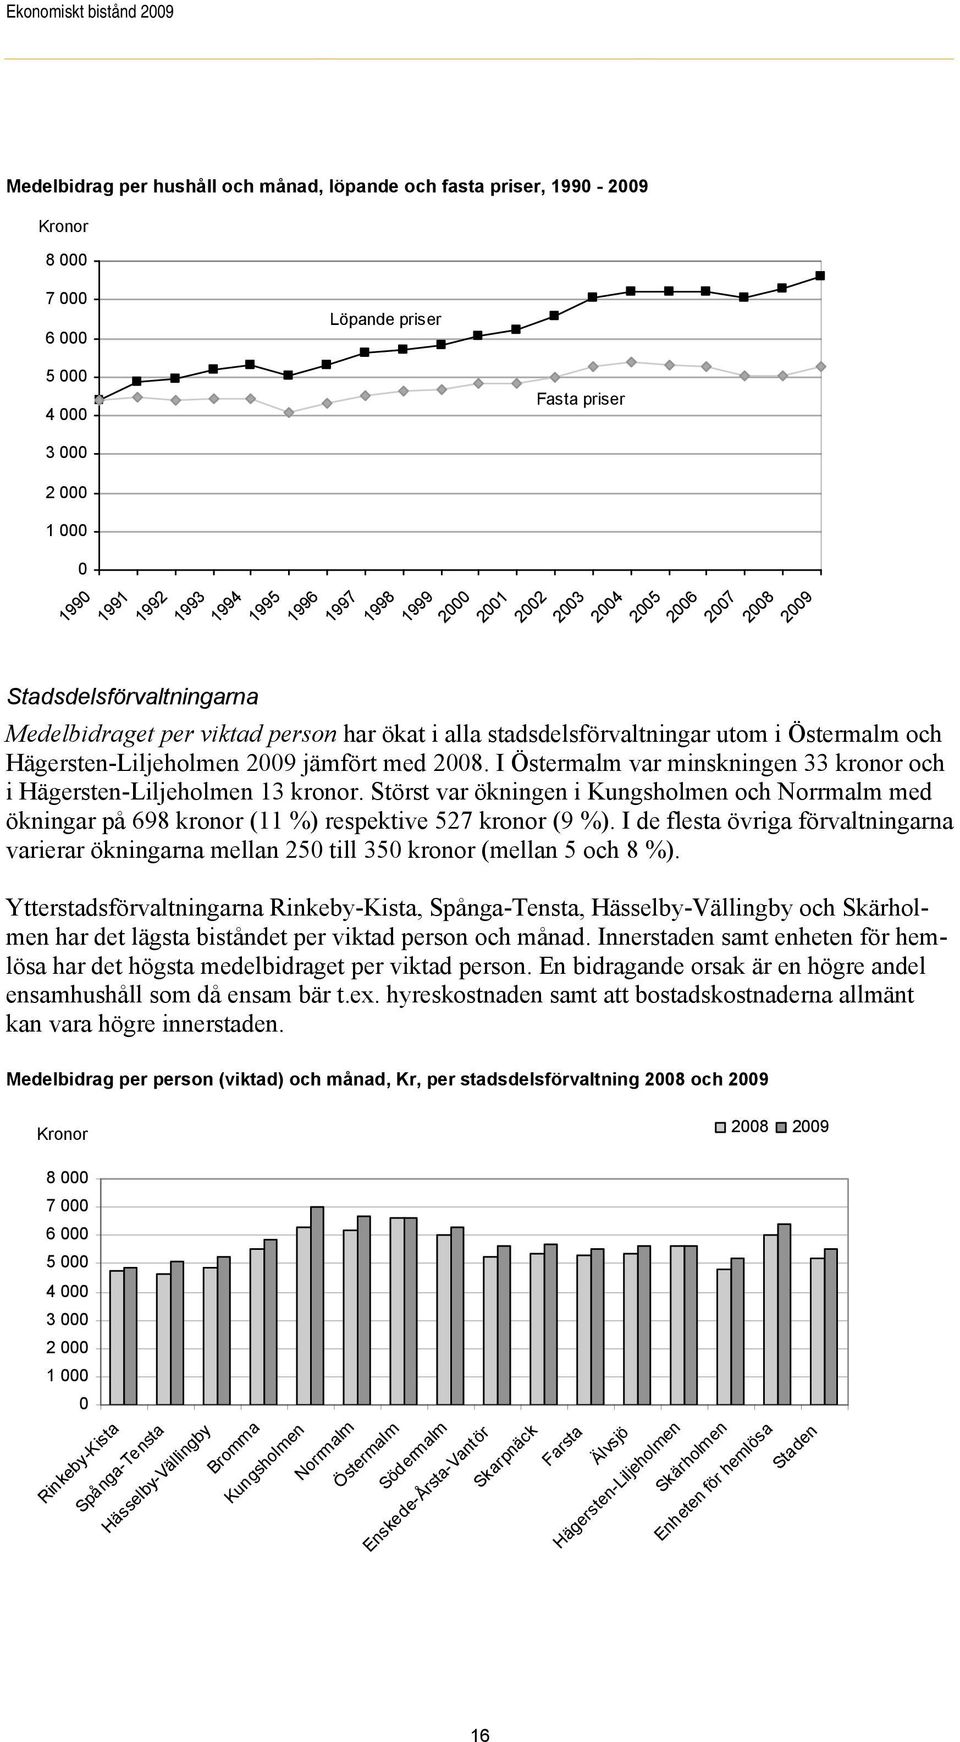 utom i Östermalm och Hägersten-Liljeholmen 2009 jämfört med 2008. I Östermalm var minskningen 33 kronor och i Hägersten-Liljeholmen 13 kronor.